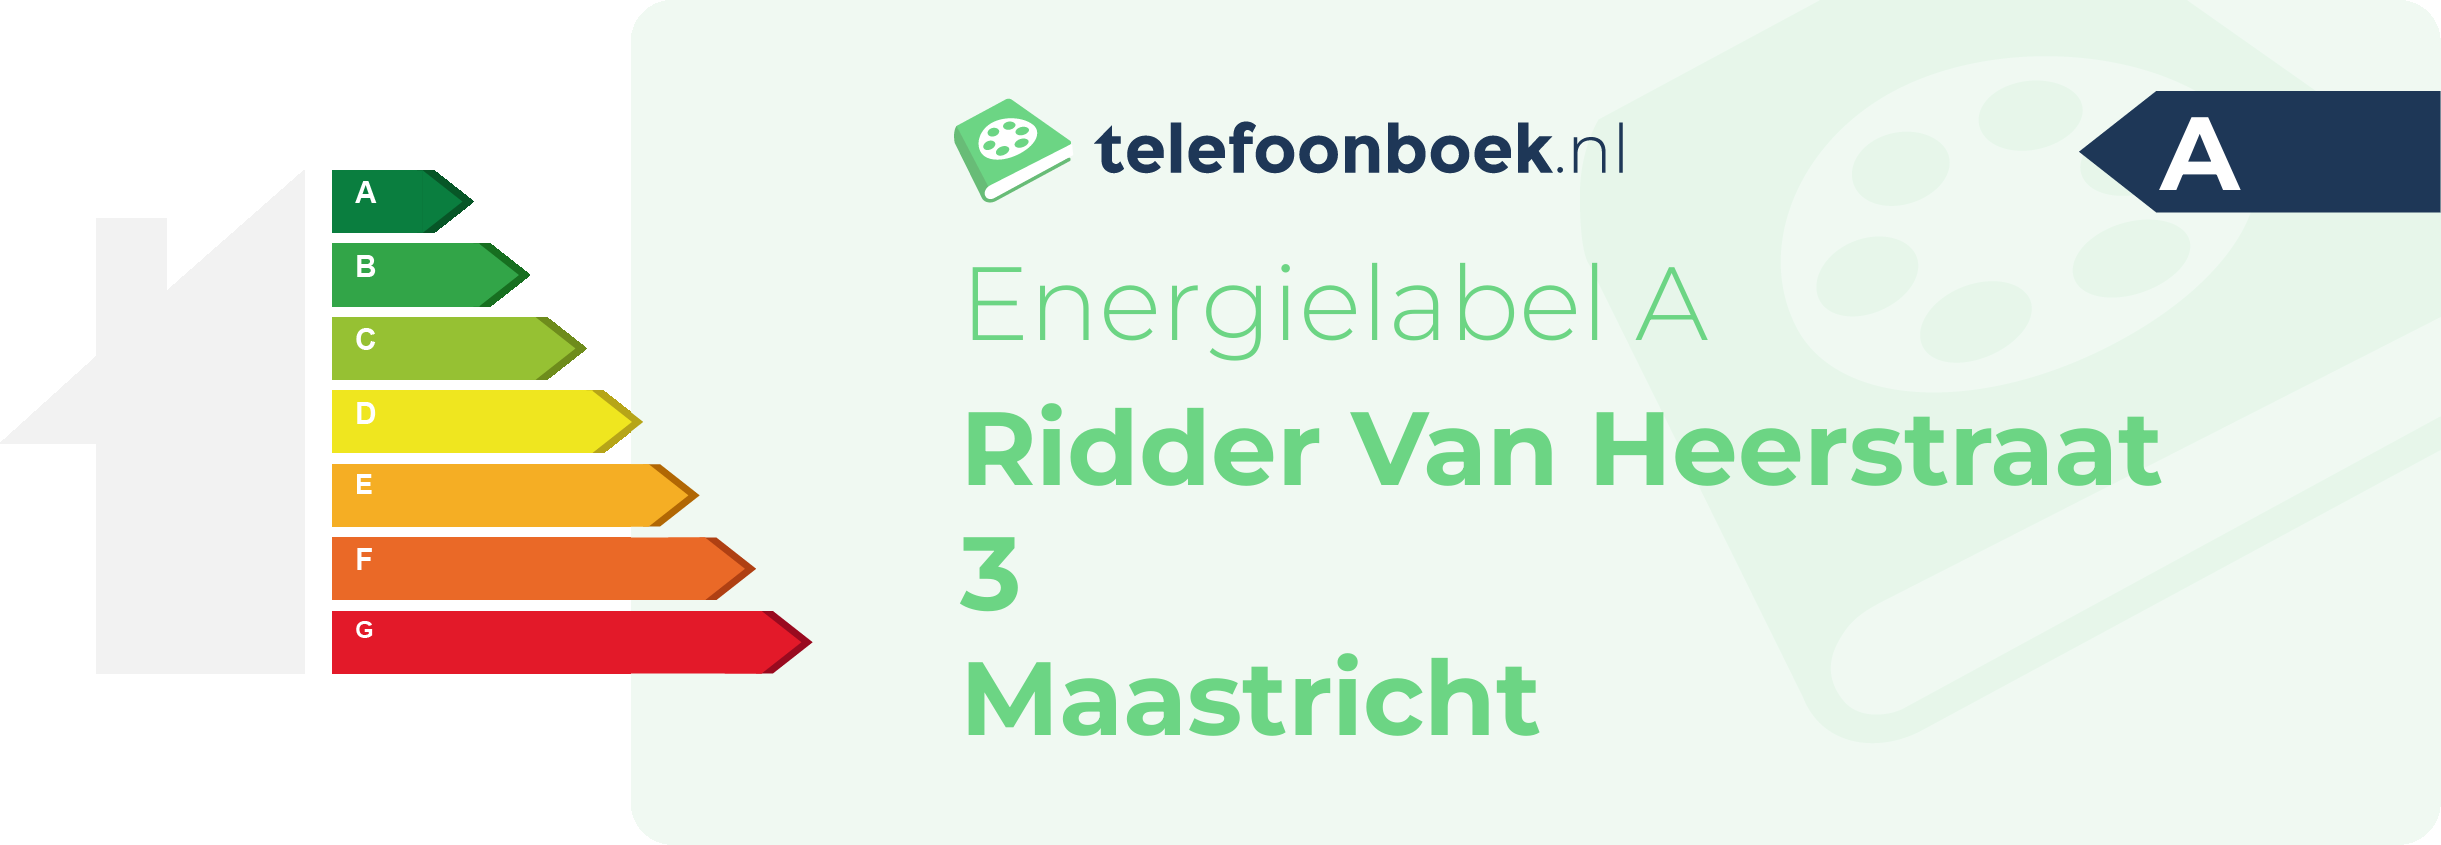 Energielabel Ridder Van Heerstraat 3 Maastricht